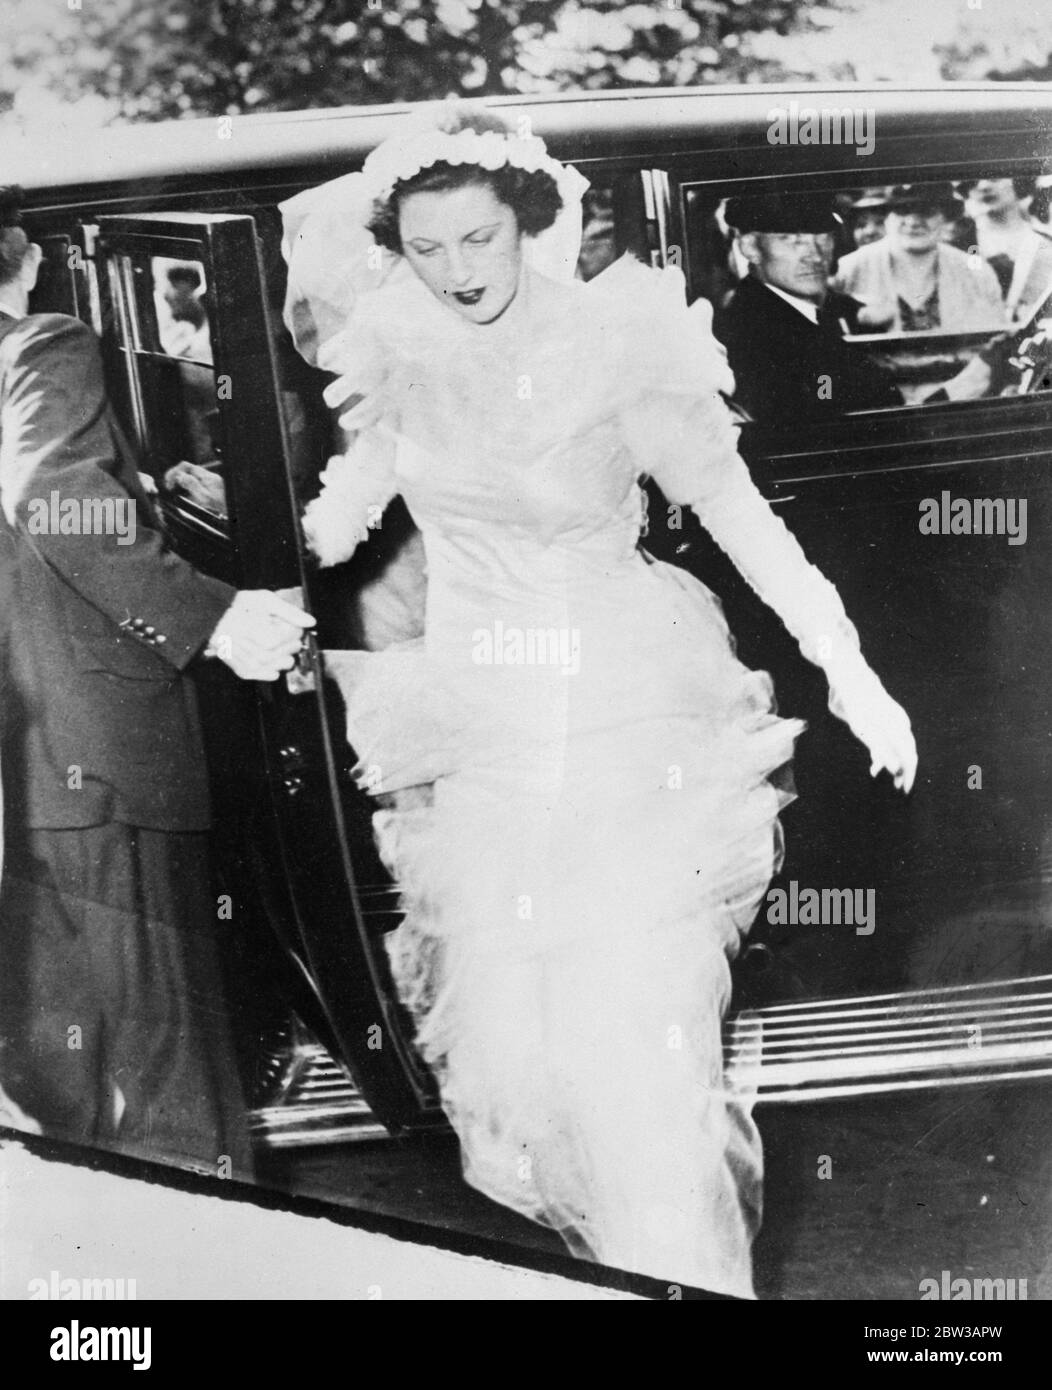 Sie hatte ihren Weg. Frau von J Astor der dritte ist Brautjungfer nach dem Streit. Foto zeigt Frau John Jacob Astor III Ankunft in der Kirche der himmlischen Ruhe für die Hochzeitszeremonie, bei der sie eine Brautjungfer war. 27. September 1934 Stockfoto